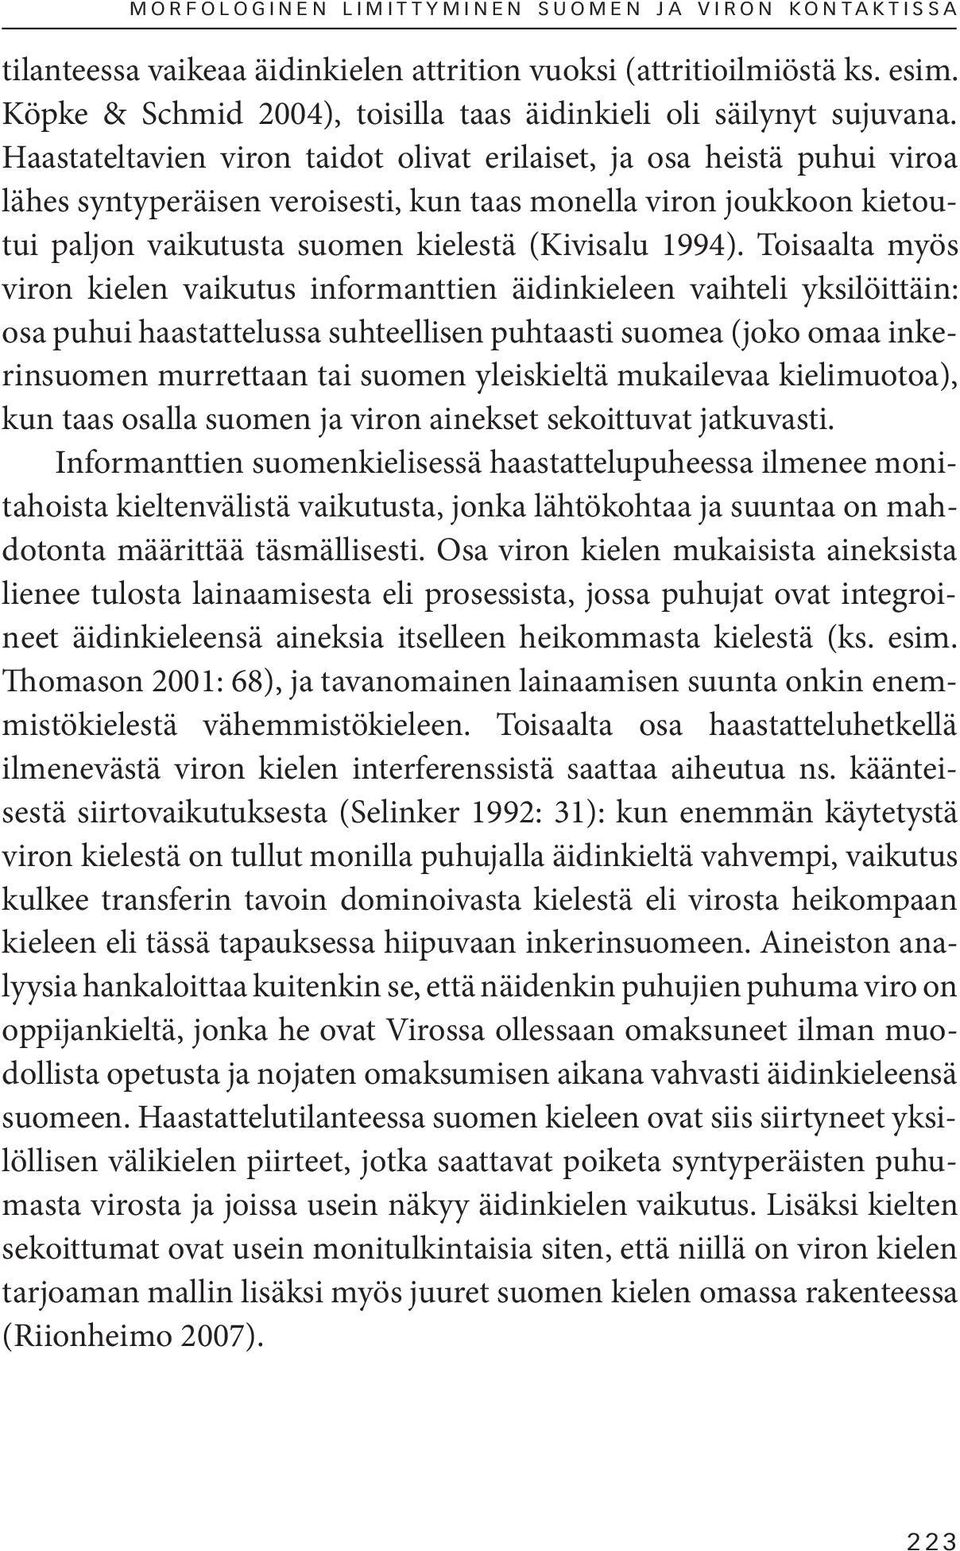 Haastateltavien viron taidot olivat erilaiset, ja osa heistä puhui viroa lähes syntyperäisen veroisesti, kun taas monella viron joukkoon kietoutui paljon vaikutusta suomen kielestä (Kivisalu 1994).